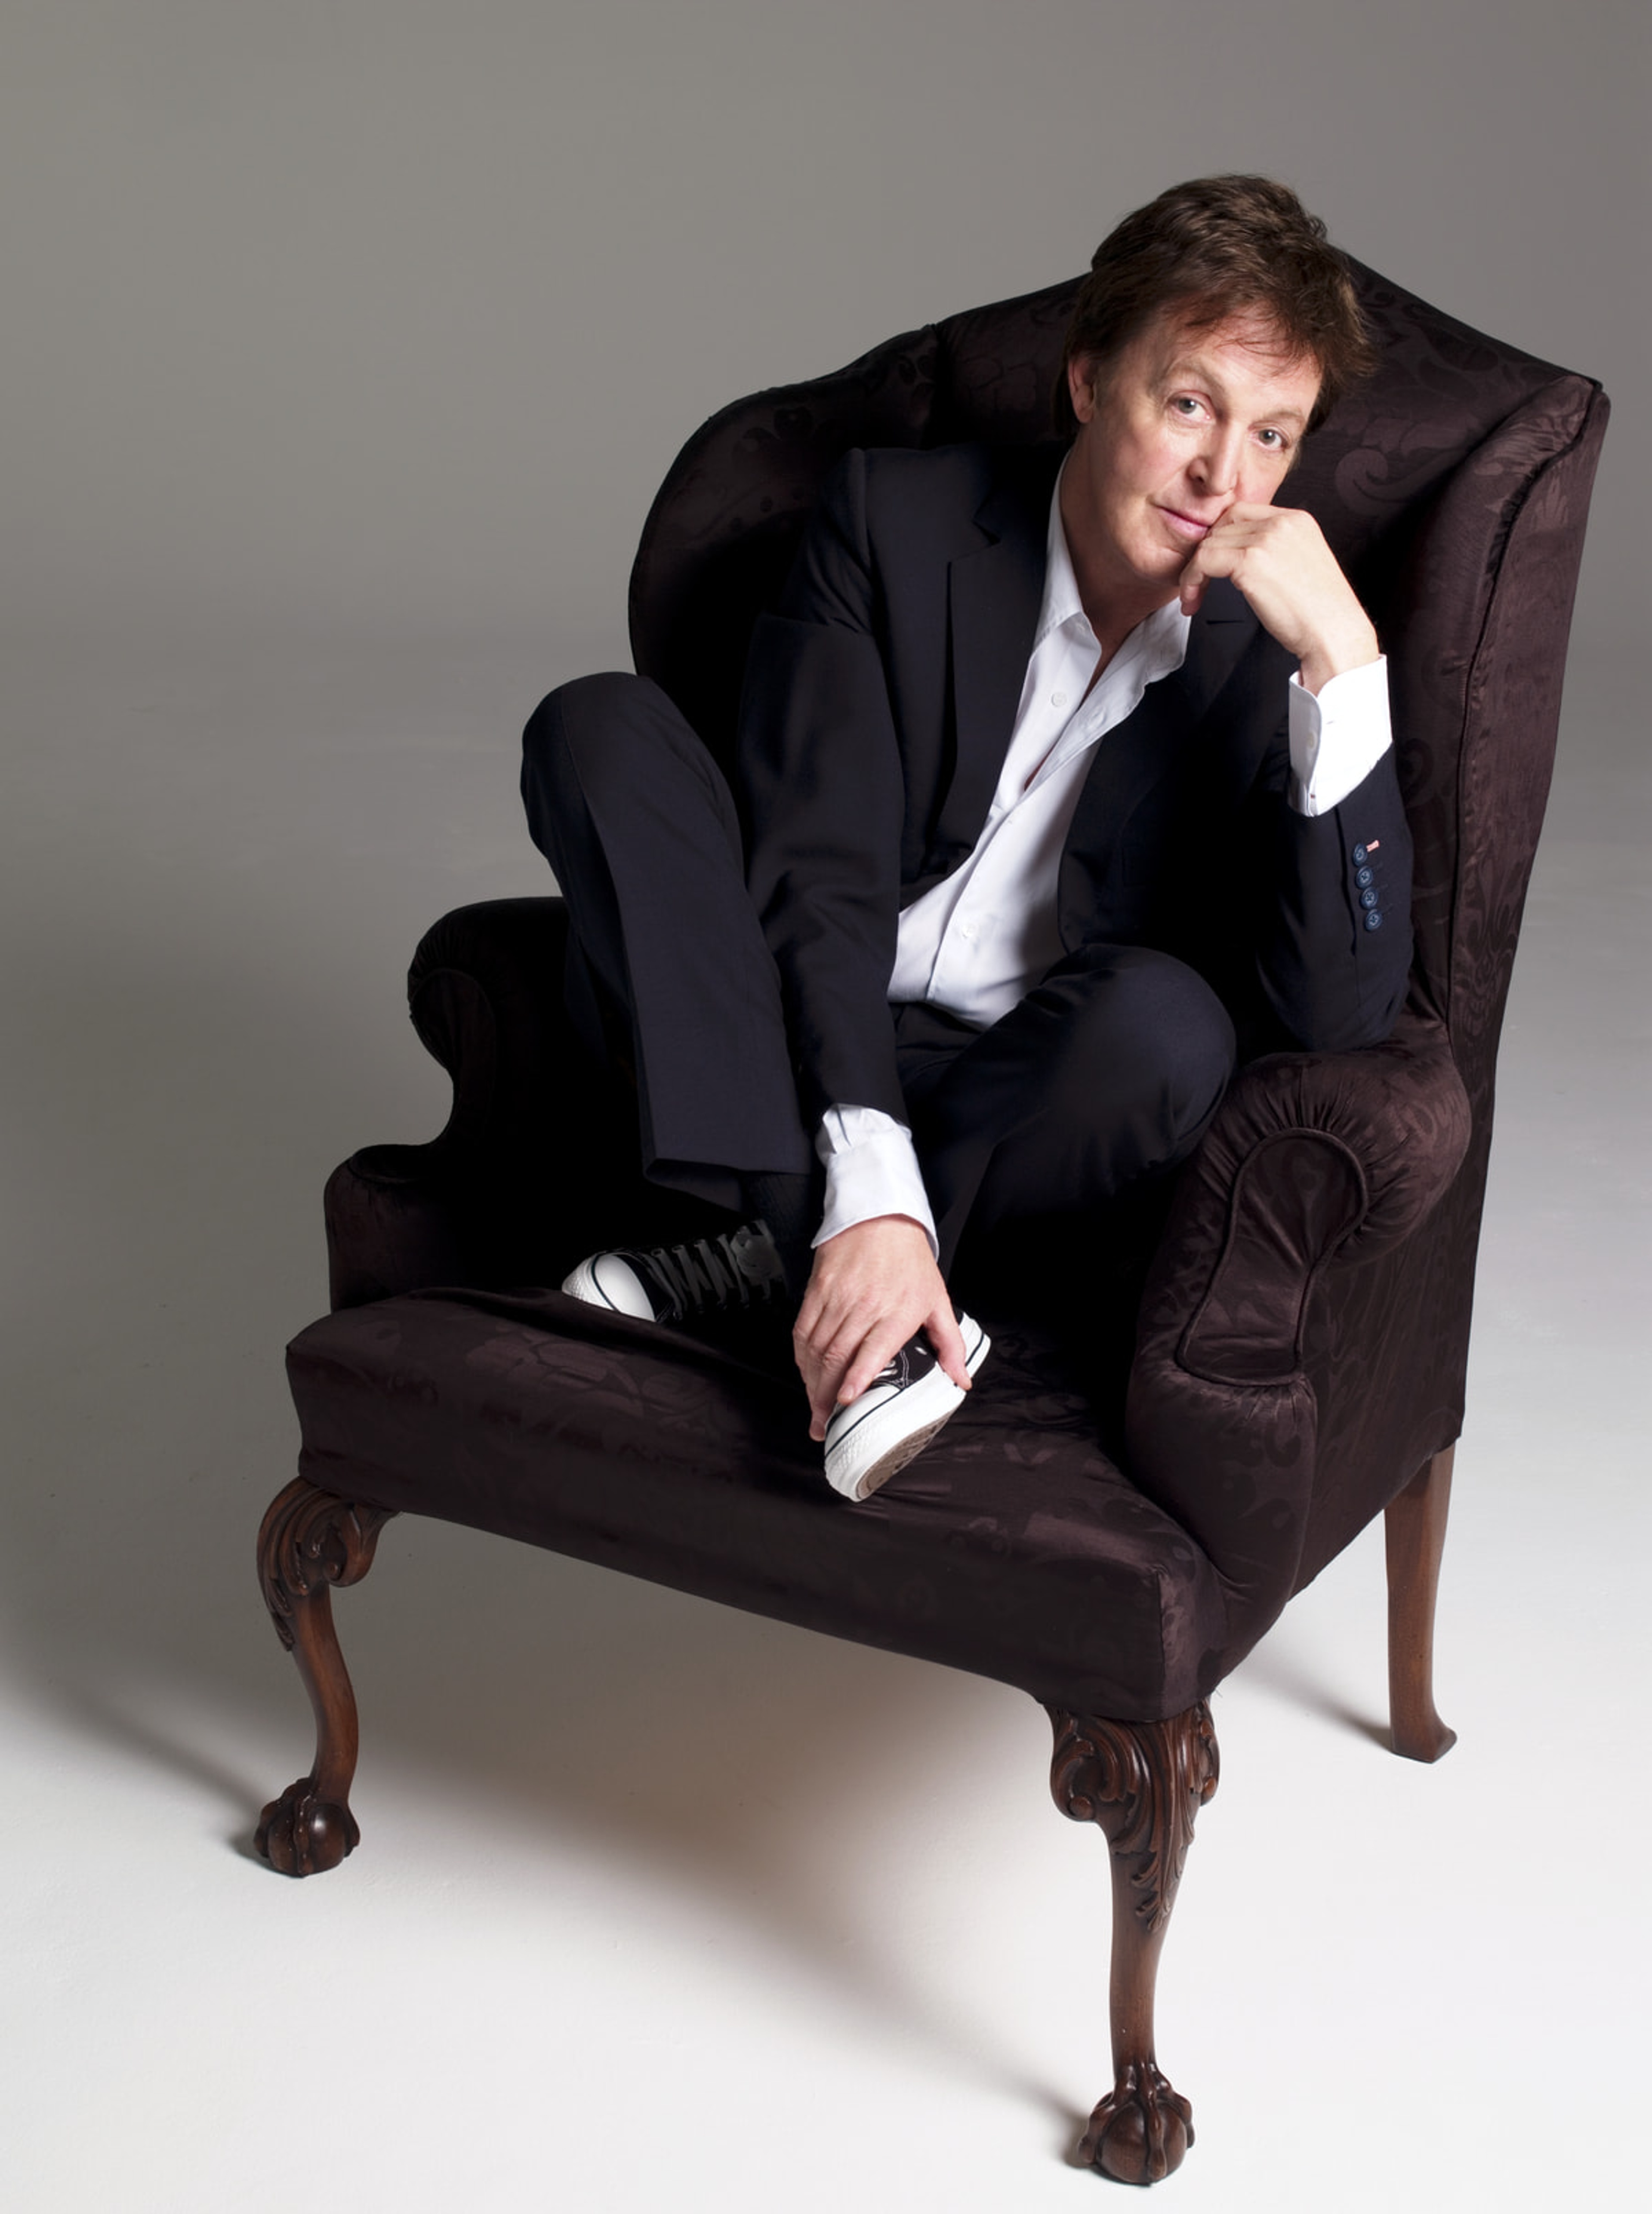 Paul sat on an armchair